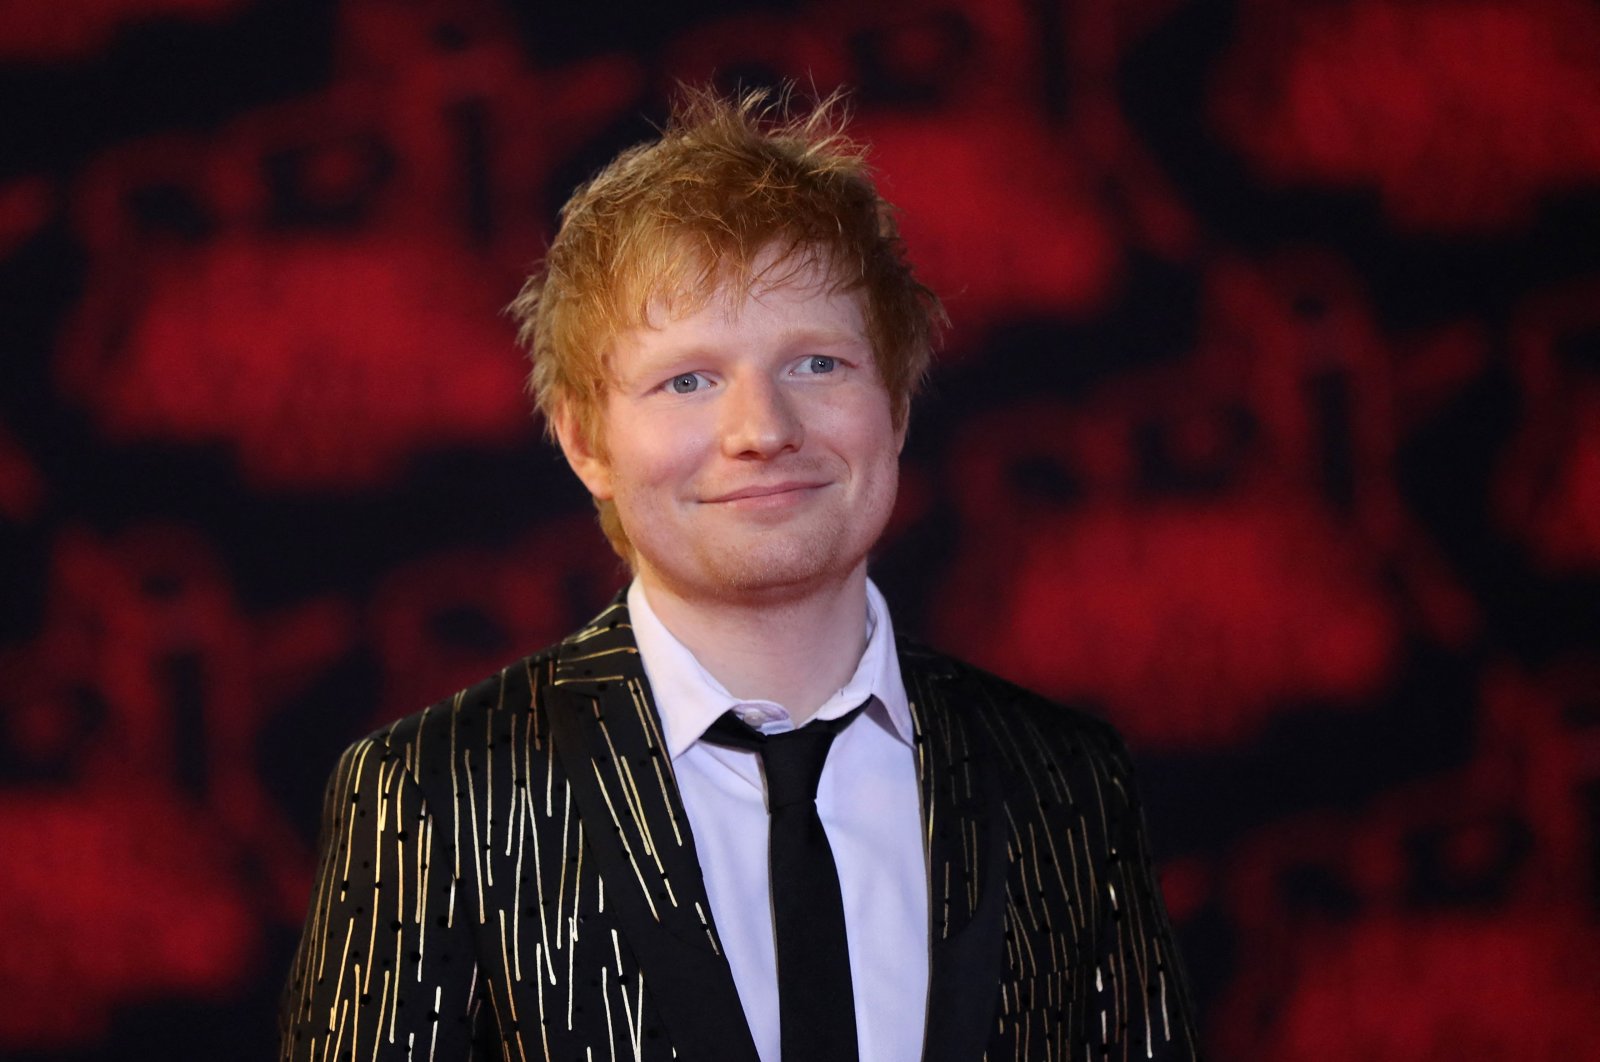 Ed Sheeran memenangkan sidang hak cipta, mengkritik klaim tak berdasar